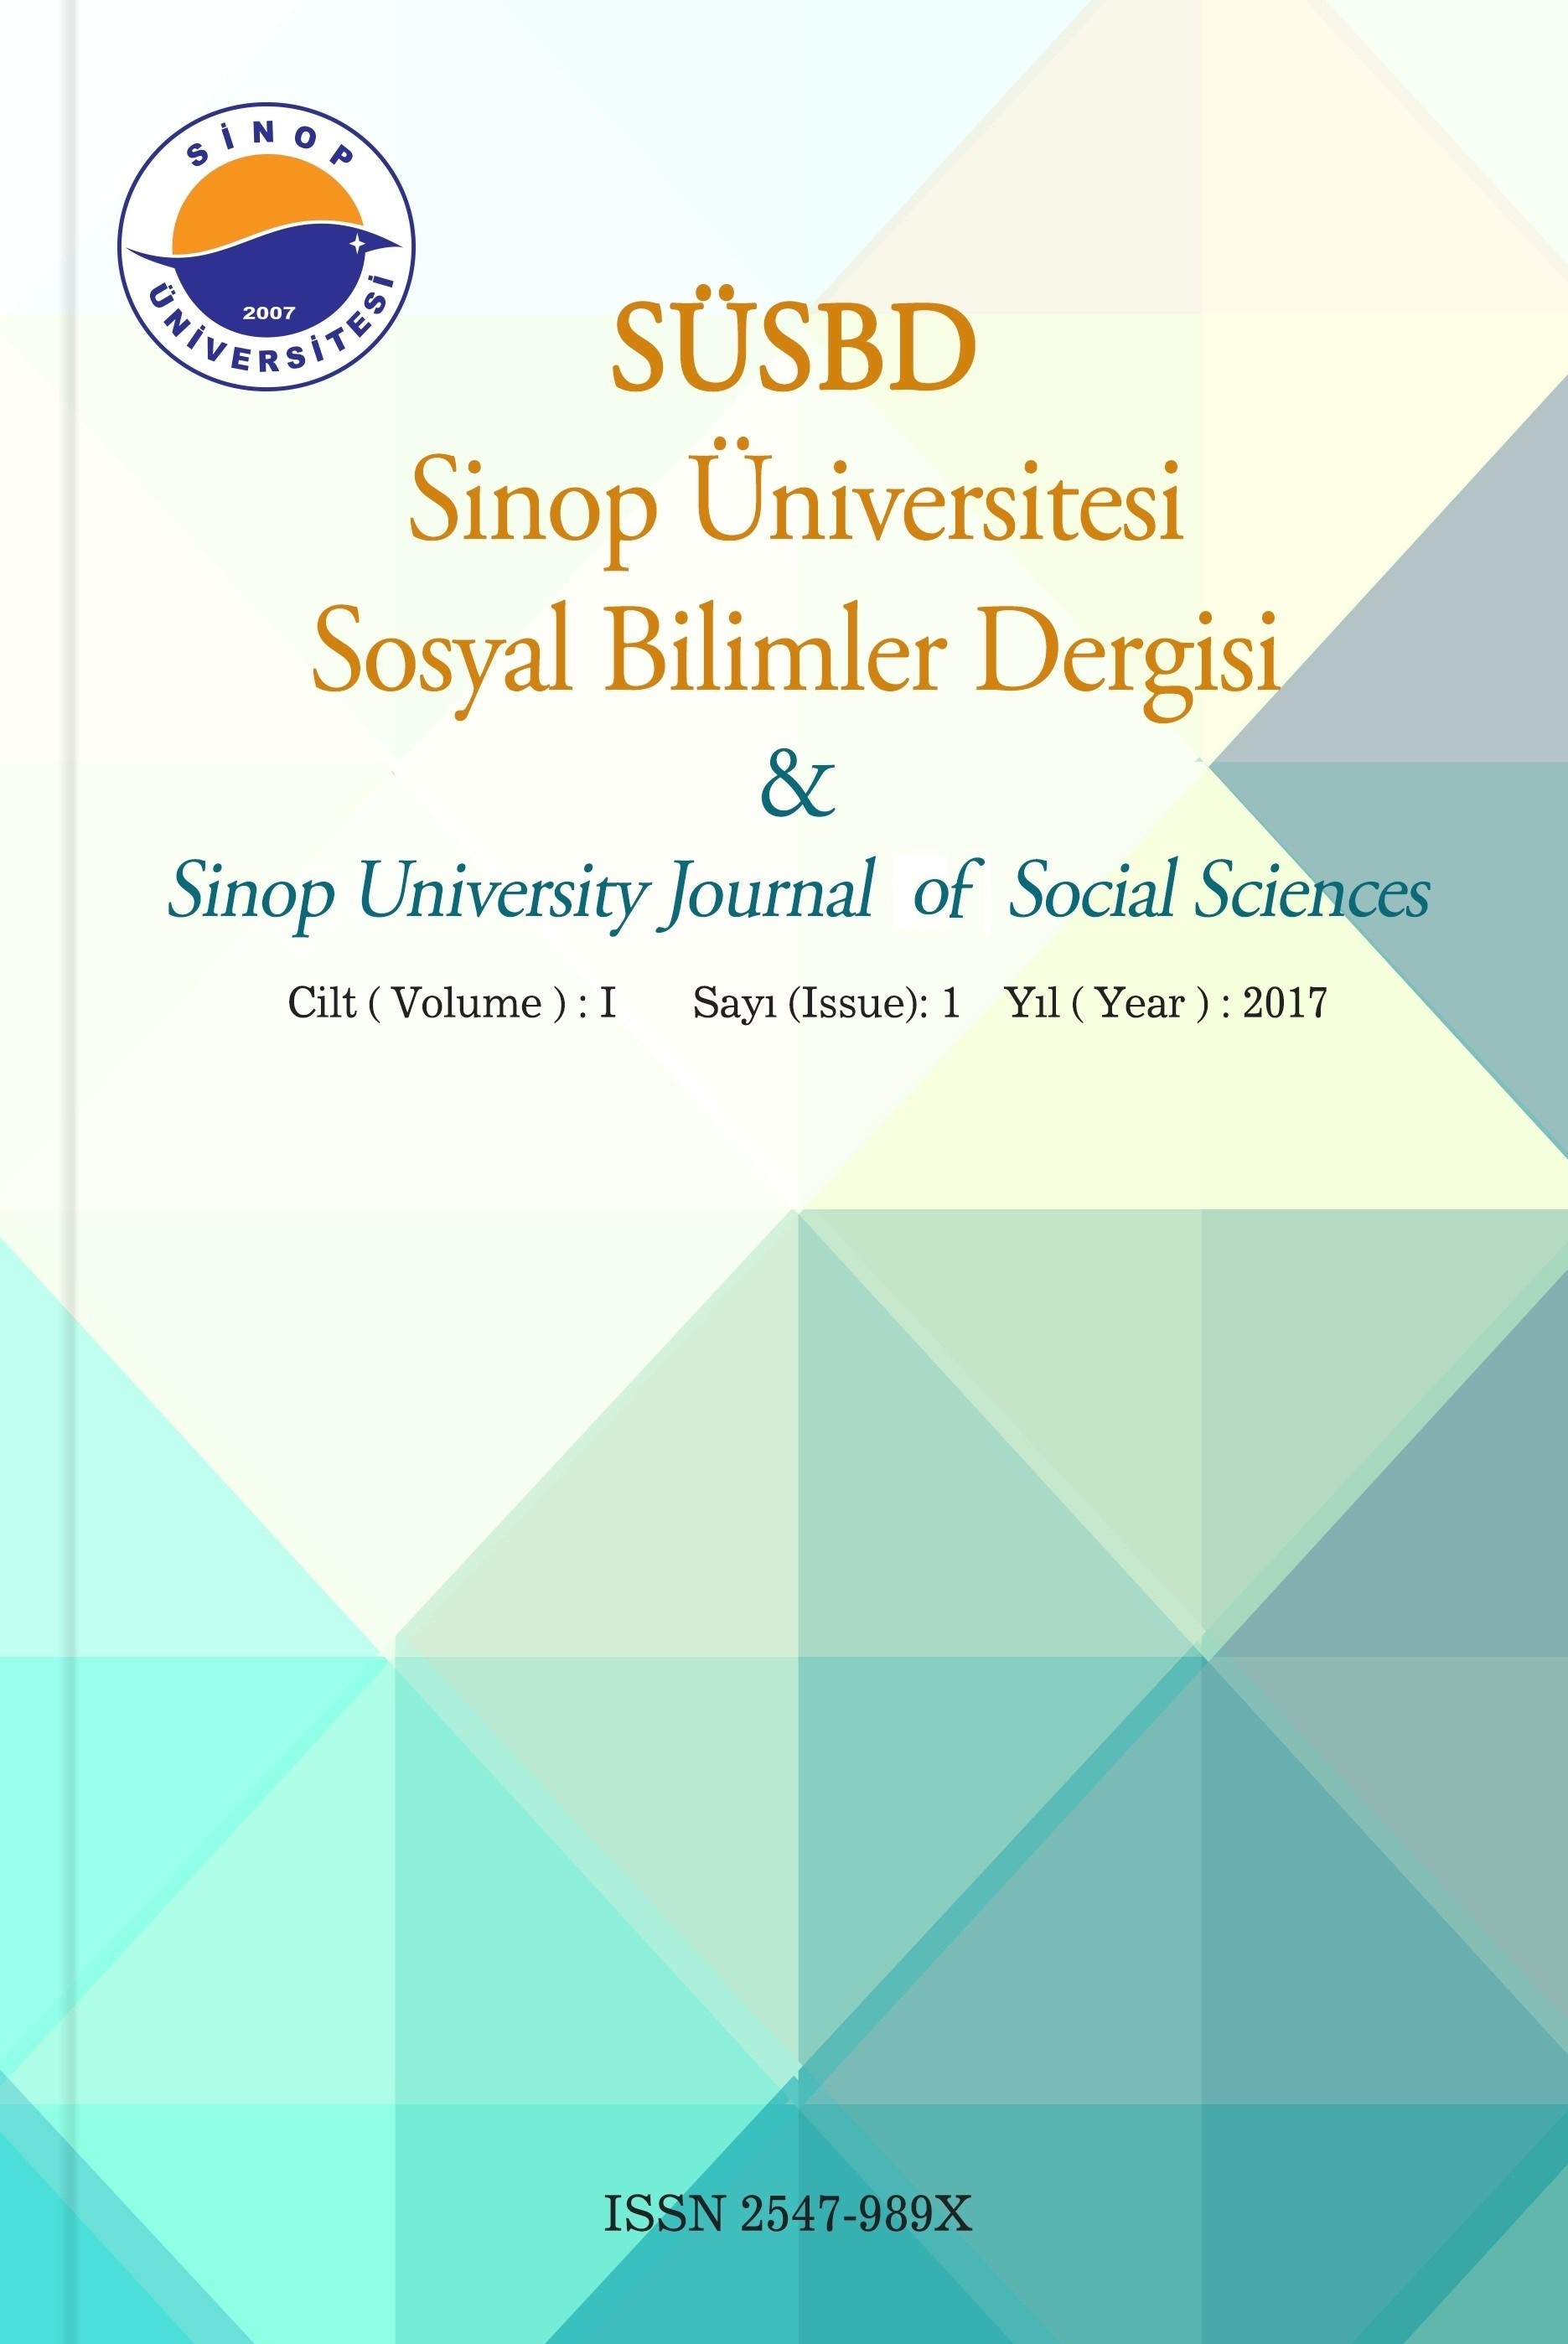 Sinop Üniversitesi Sosyal Bilimler Dergisi-Asos İndeks